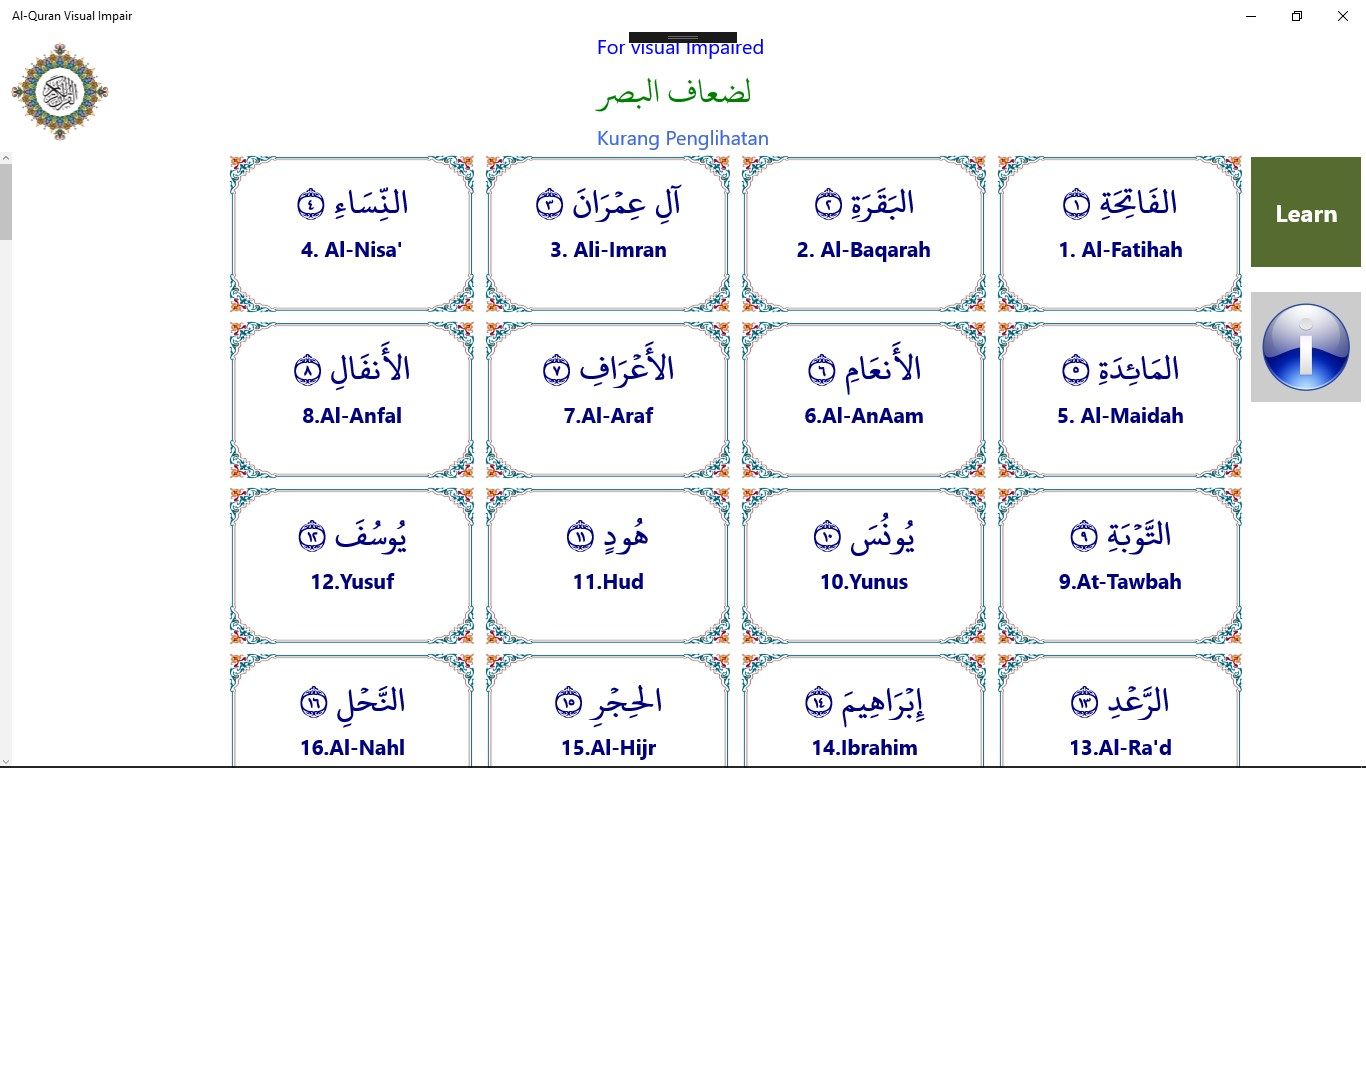 Selection of Surah. Pilihan Surah